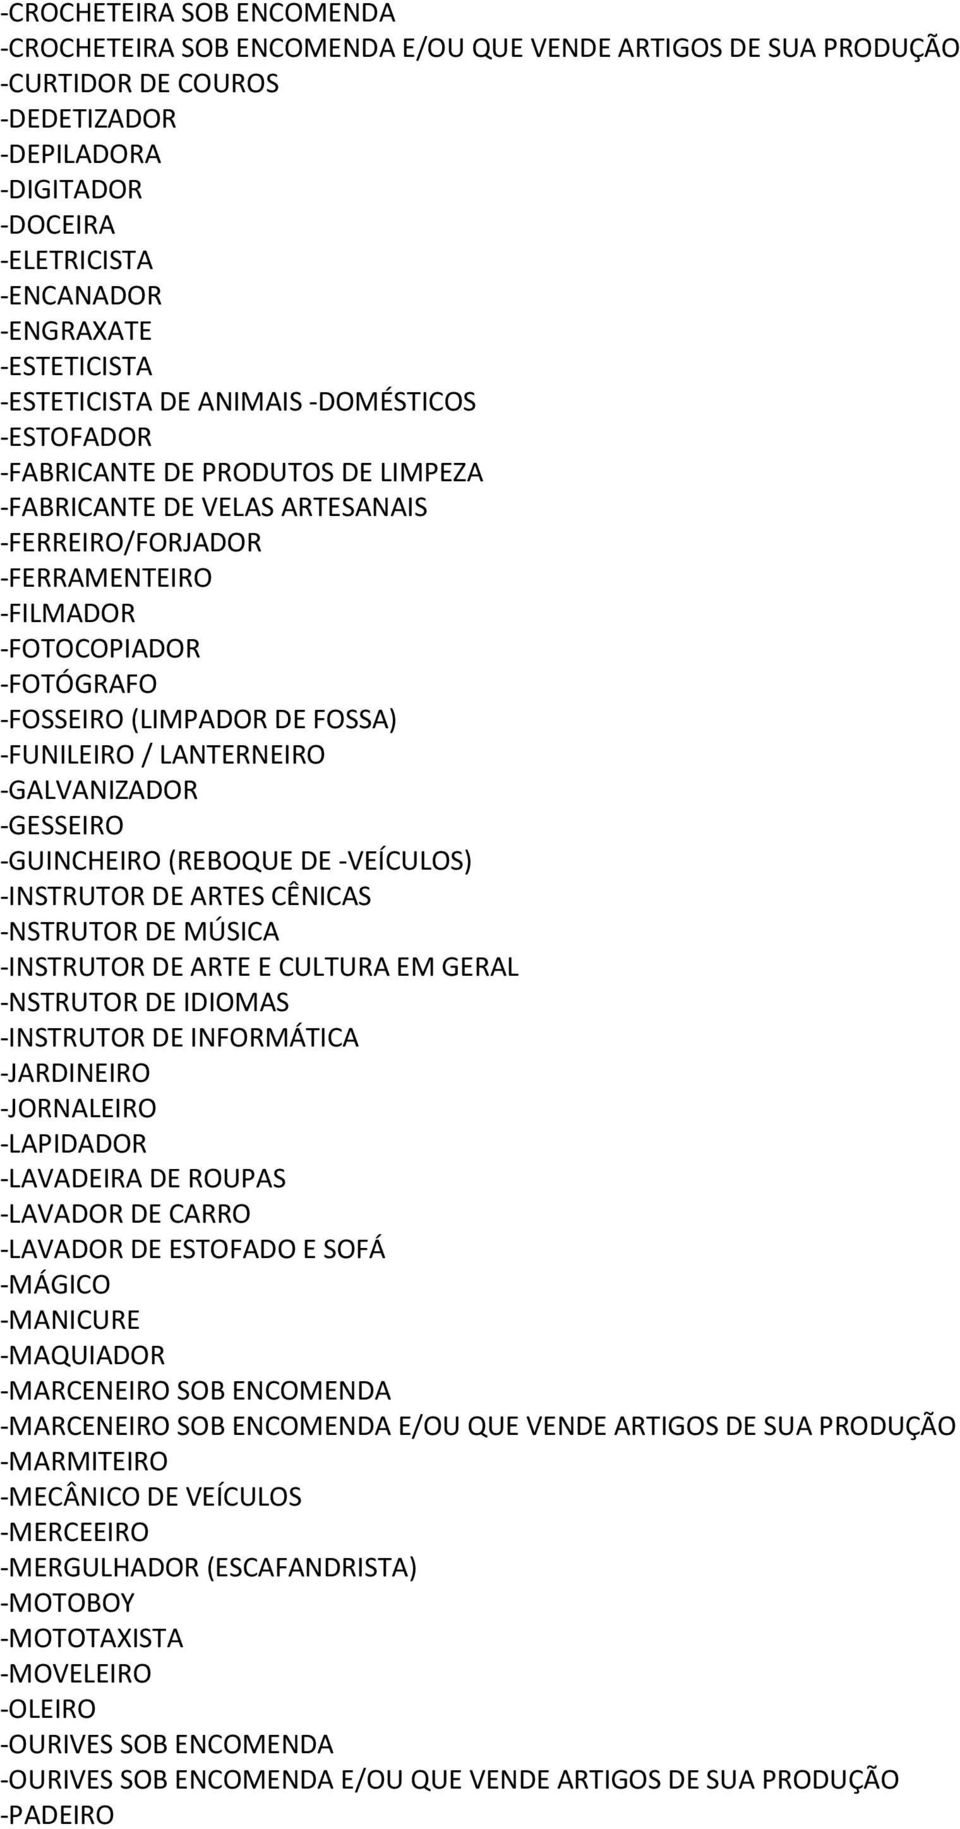 -FOSSEIRO (LIMPADOR DE FOSSA) -FUNILEIRO / LANTERNEIRO -GALVANIZADOR -GESSEIRO -GUINCHEIRO (REBOQUE DE -VEÍCULOS) -INSTRUTOR DE ARTES CÊNICAS -NSTRUTOR DE MÚSICA -INSTRUTOR DE ARTE E CULTURA EM GERAL